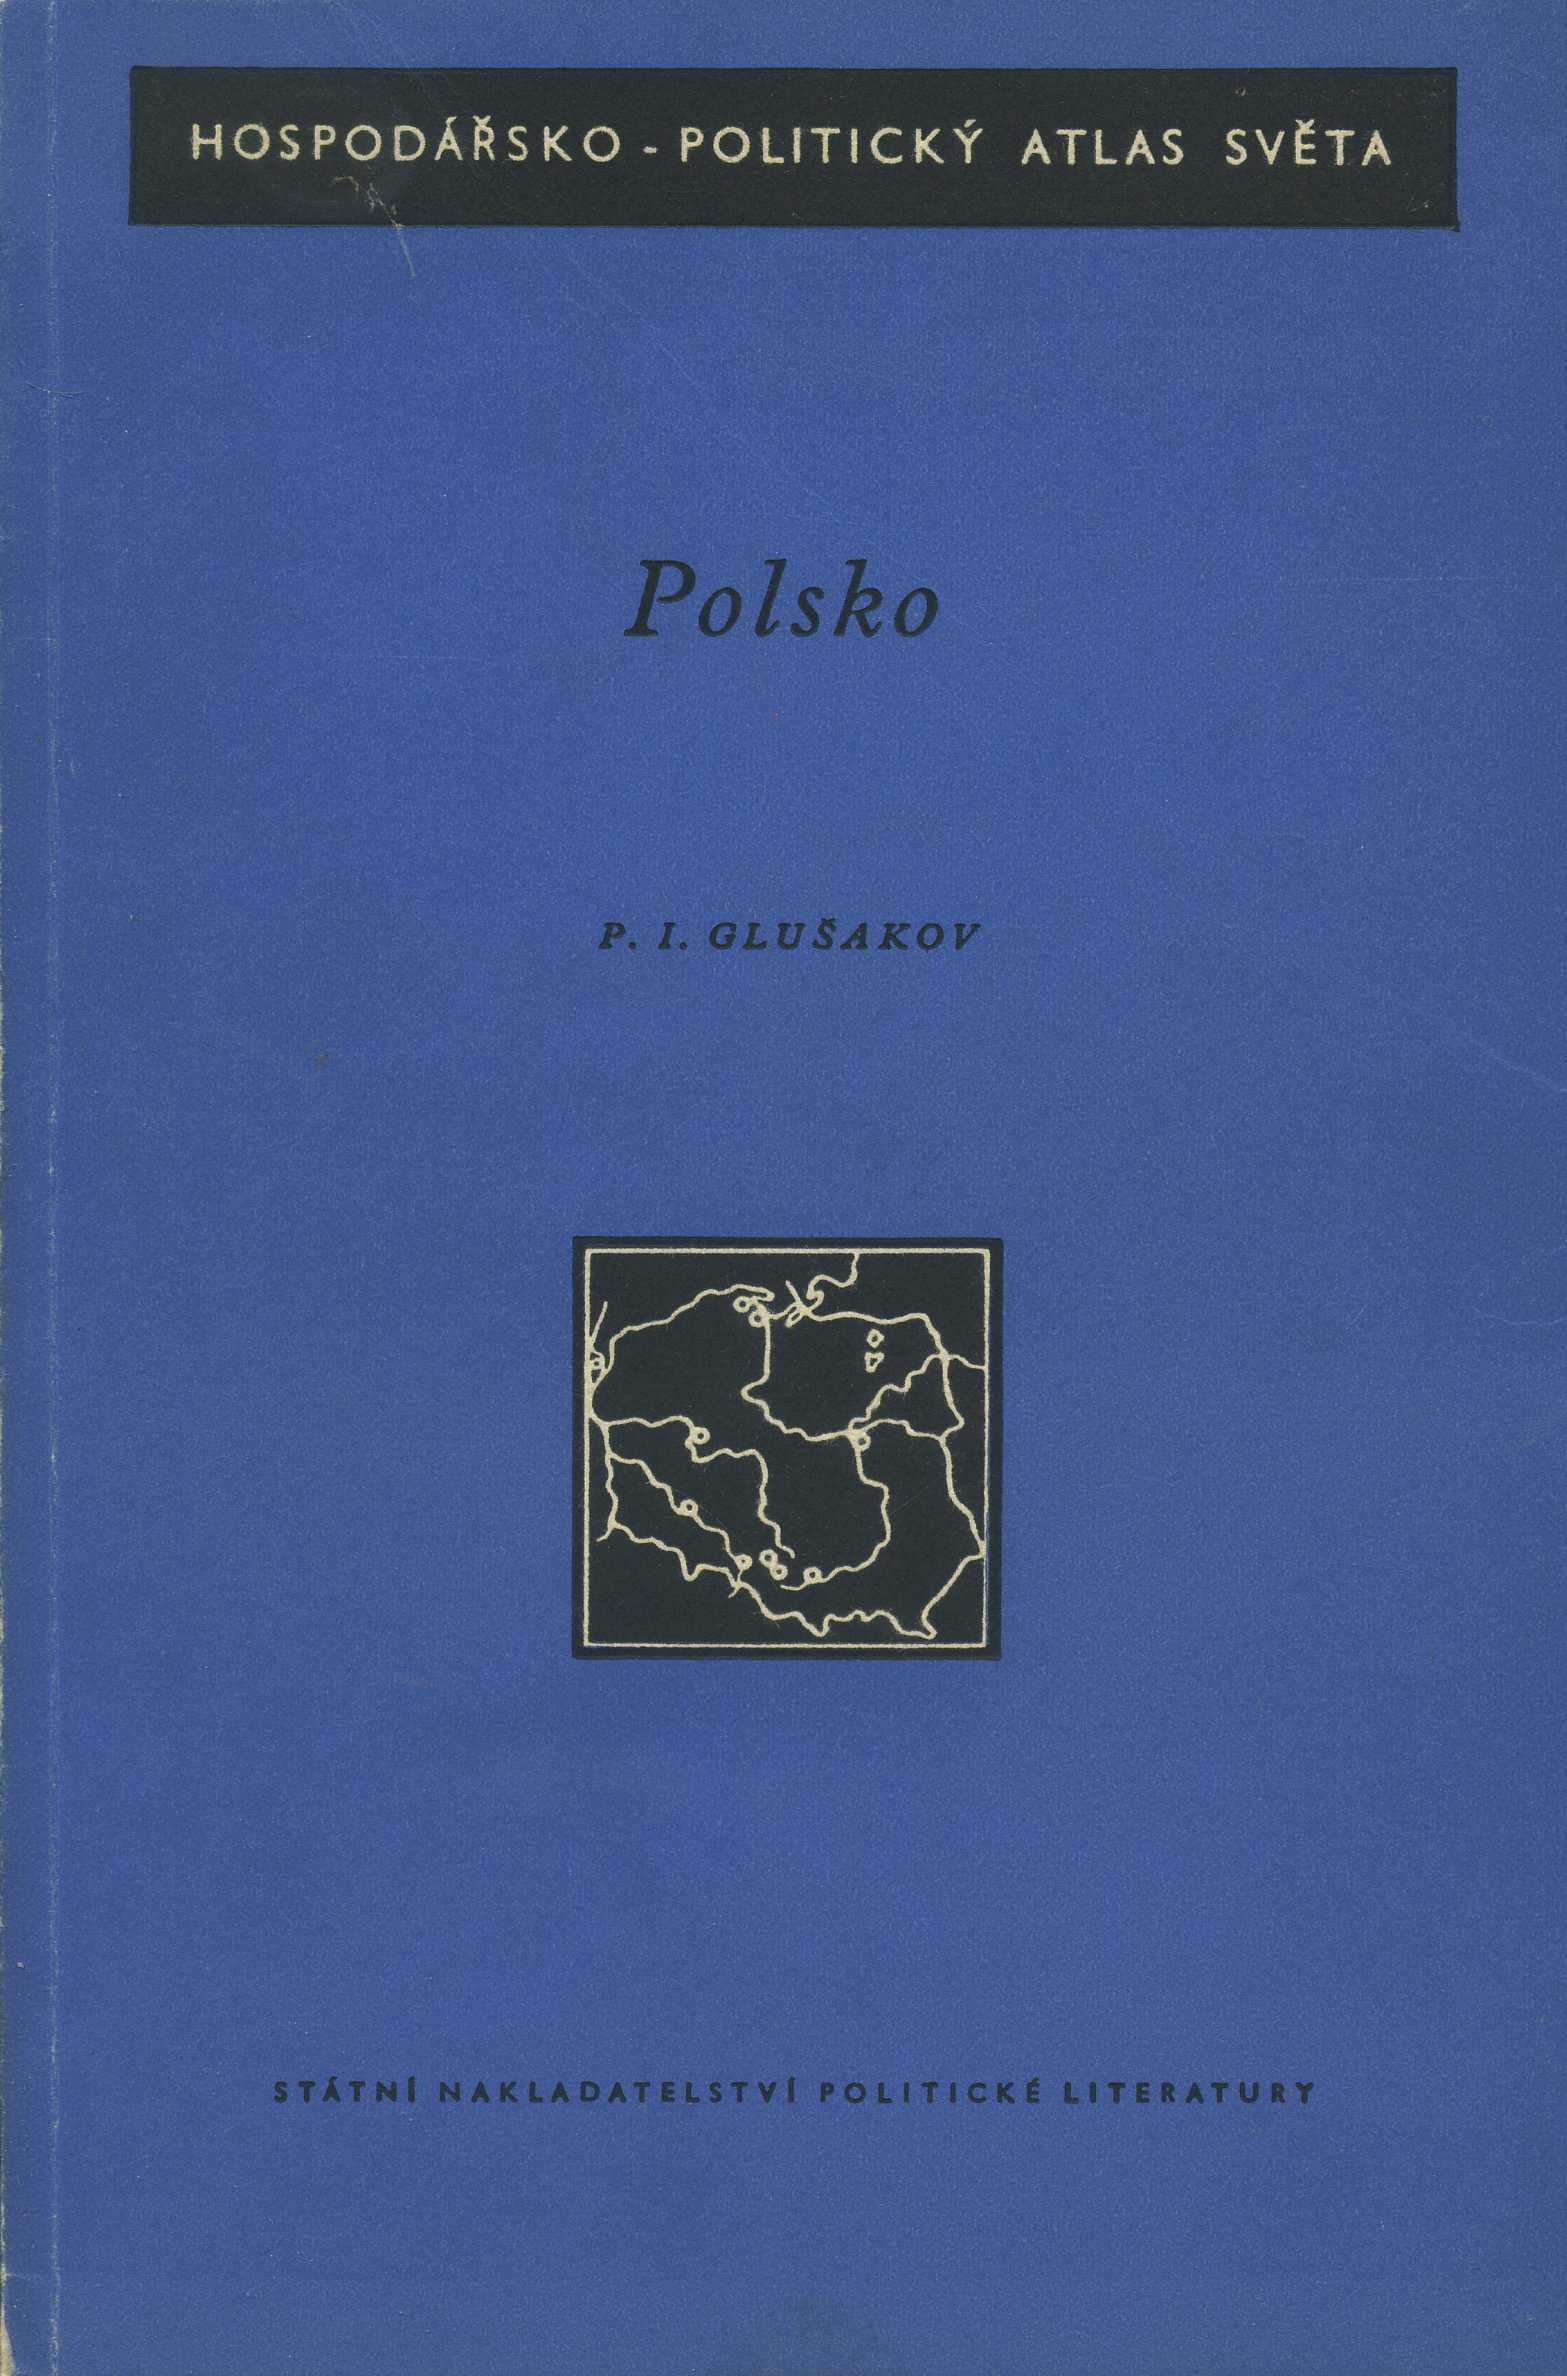 Polsko - Hospodářsko - Politický atlas světa